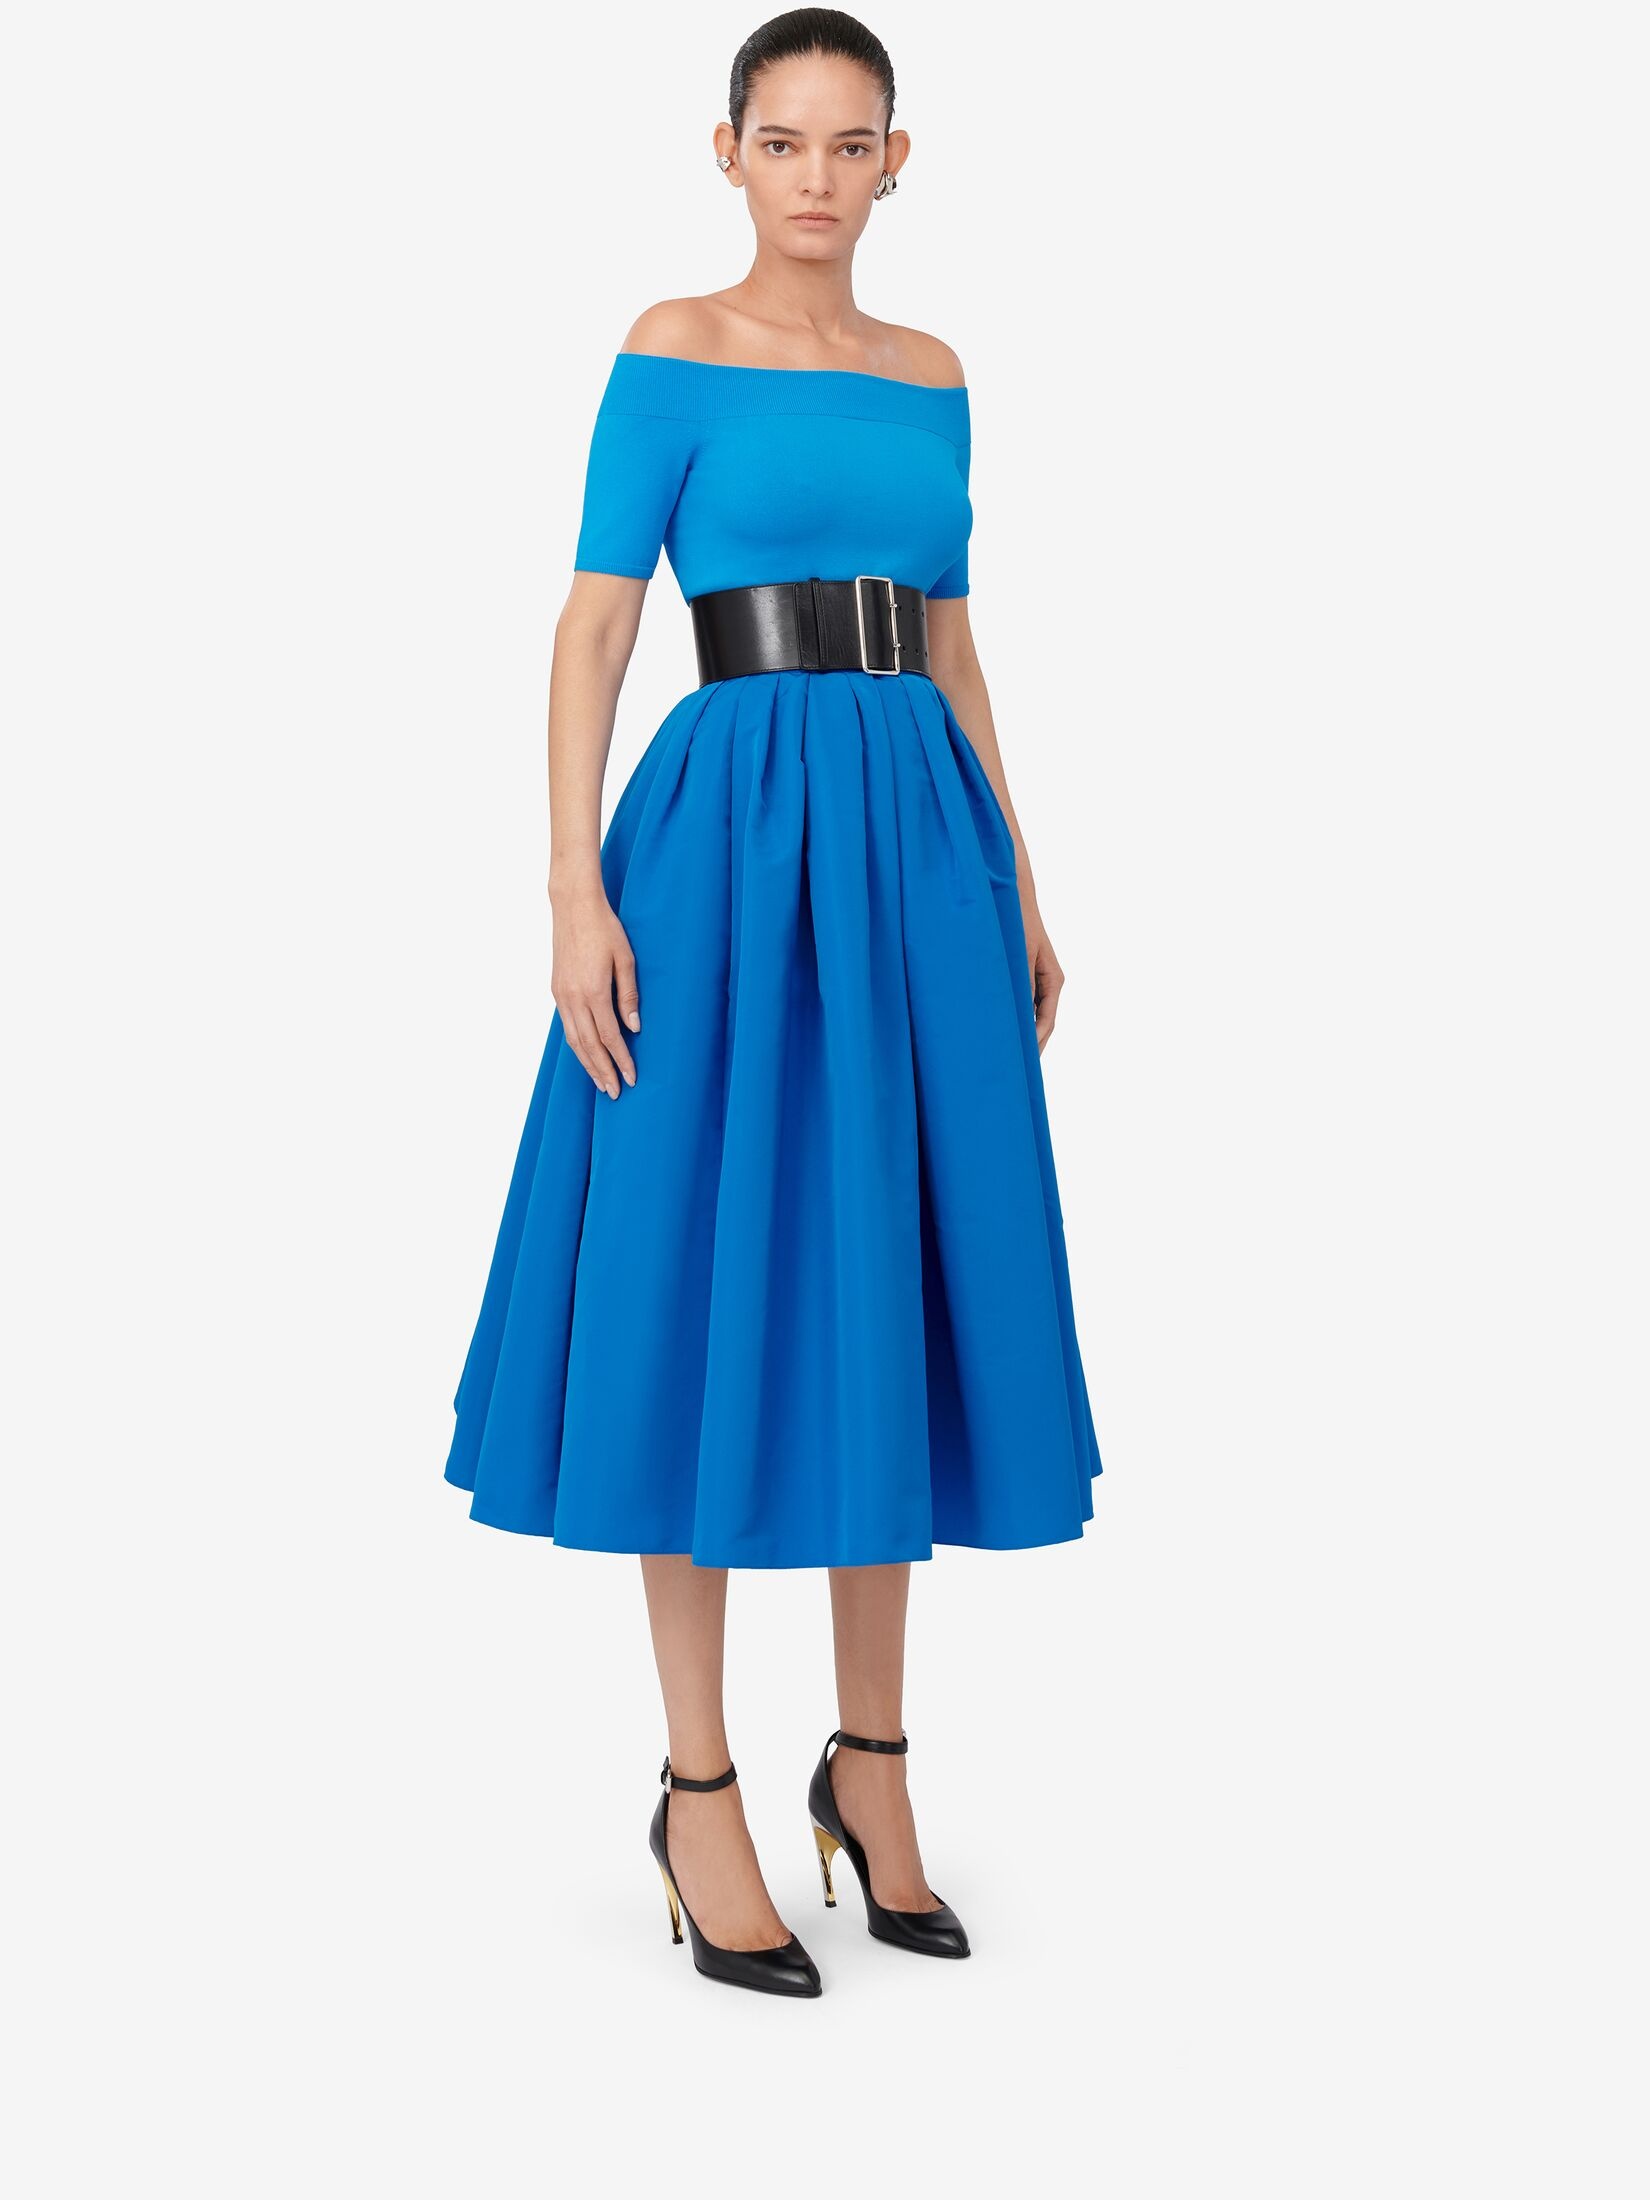 Women's Pleated Midi Skirt in Lapis Blue - 3